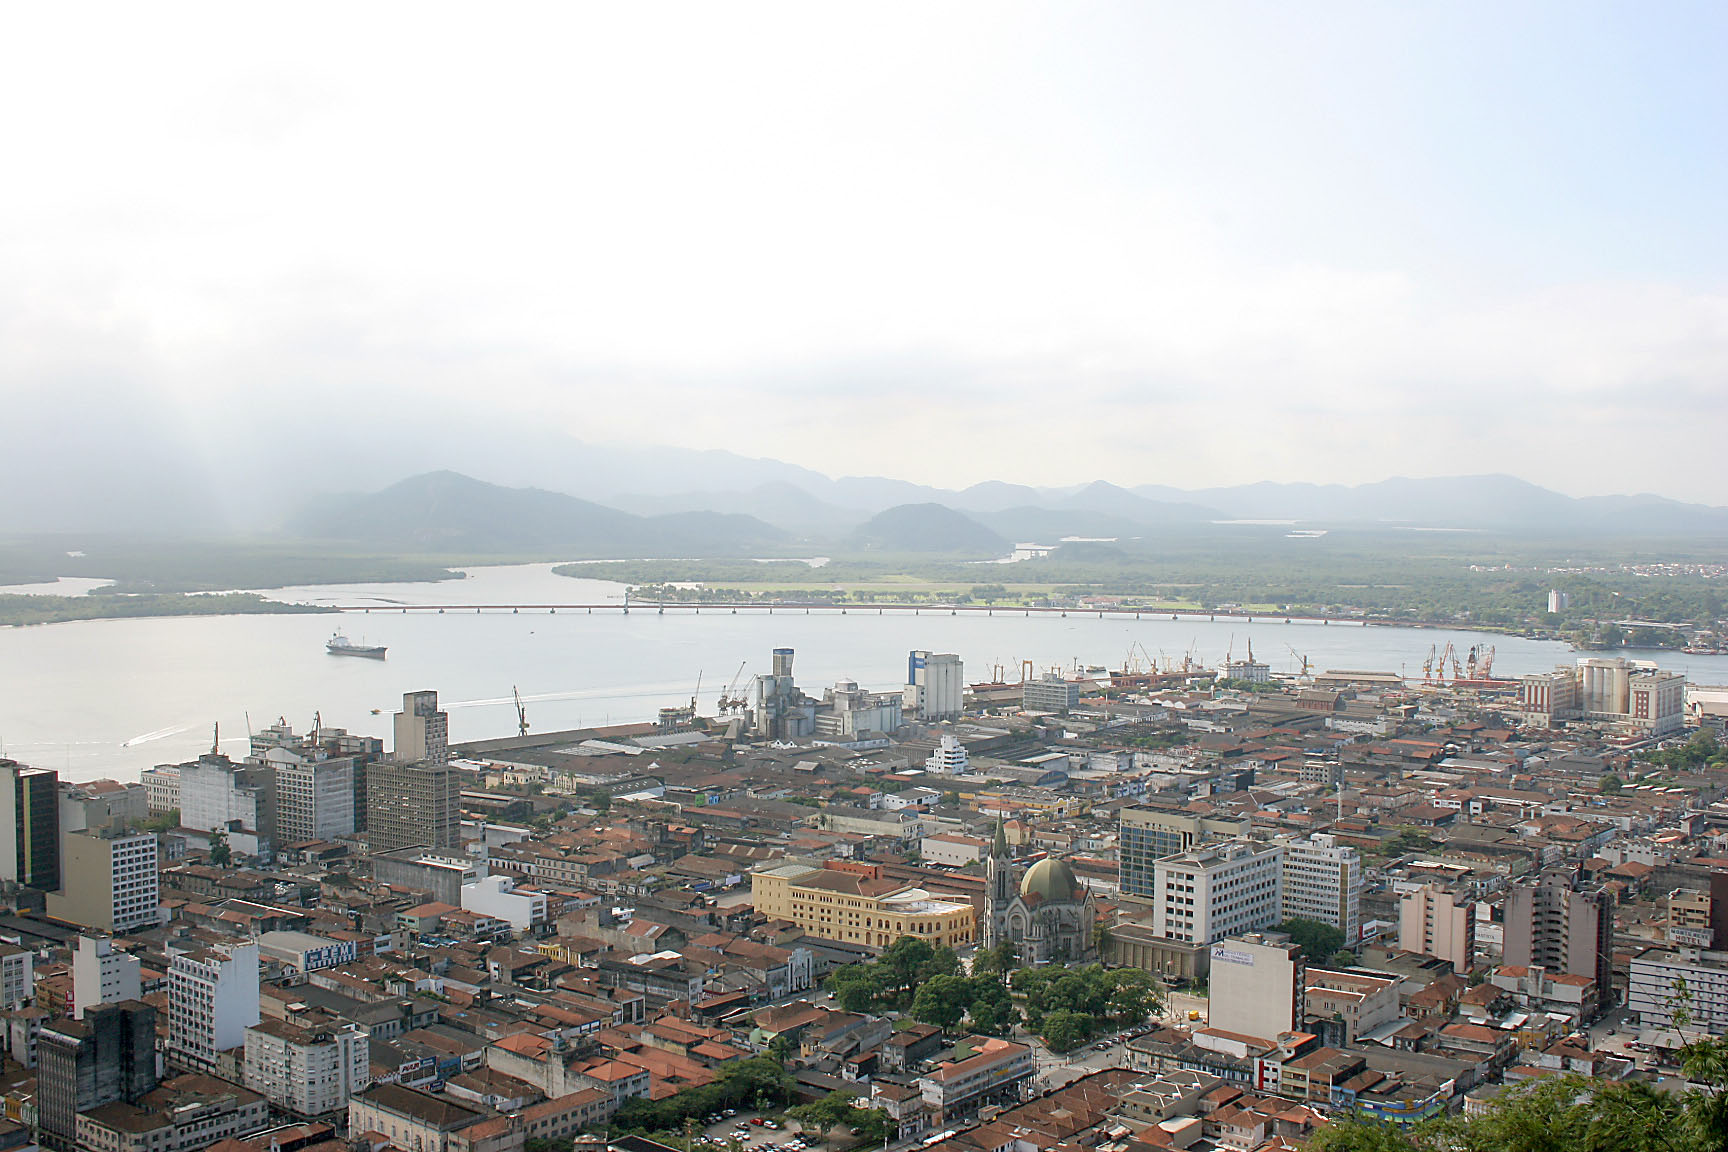 Vista panormica da cidade de Santos<a style='float:right;color:#ccc' href='https://www3.al.sp.gov.br/repositorio/noticia/03-2008/SANTOS7.jpg' target=_blank><i class='bi bi-zoom-in'></i> Clique para ver a imagem </a>